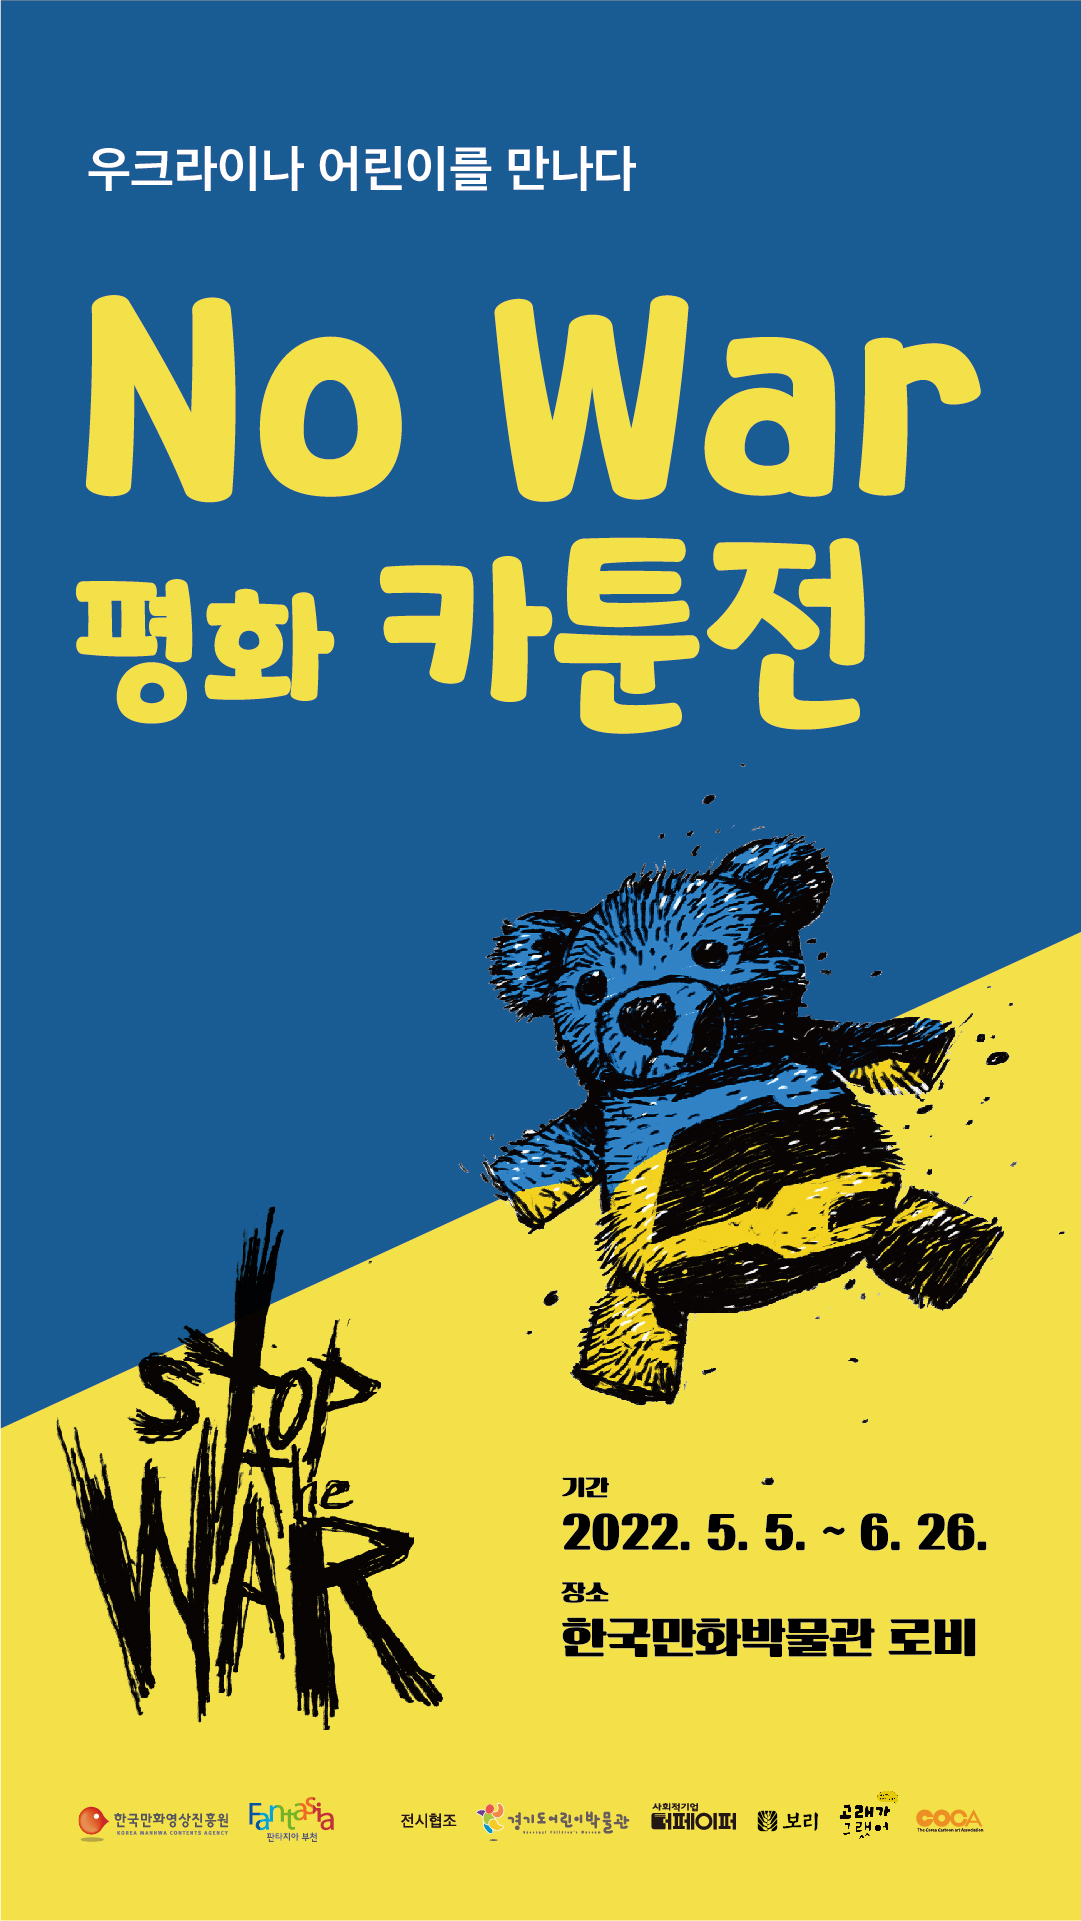 NO WAR 평화카툰전